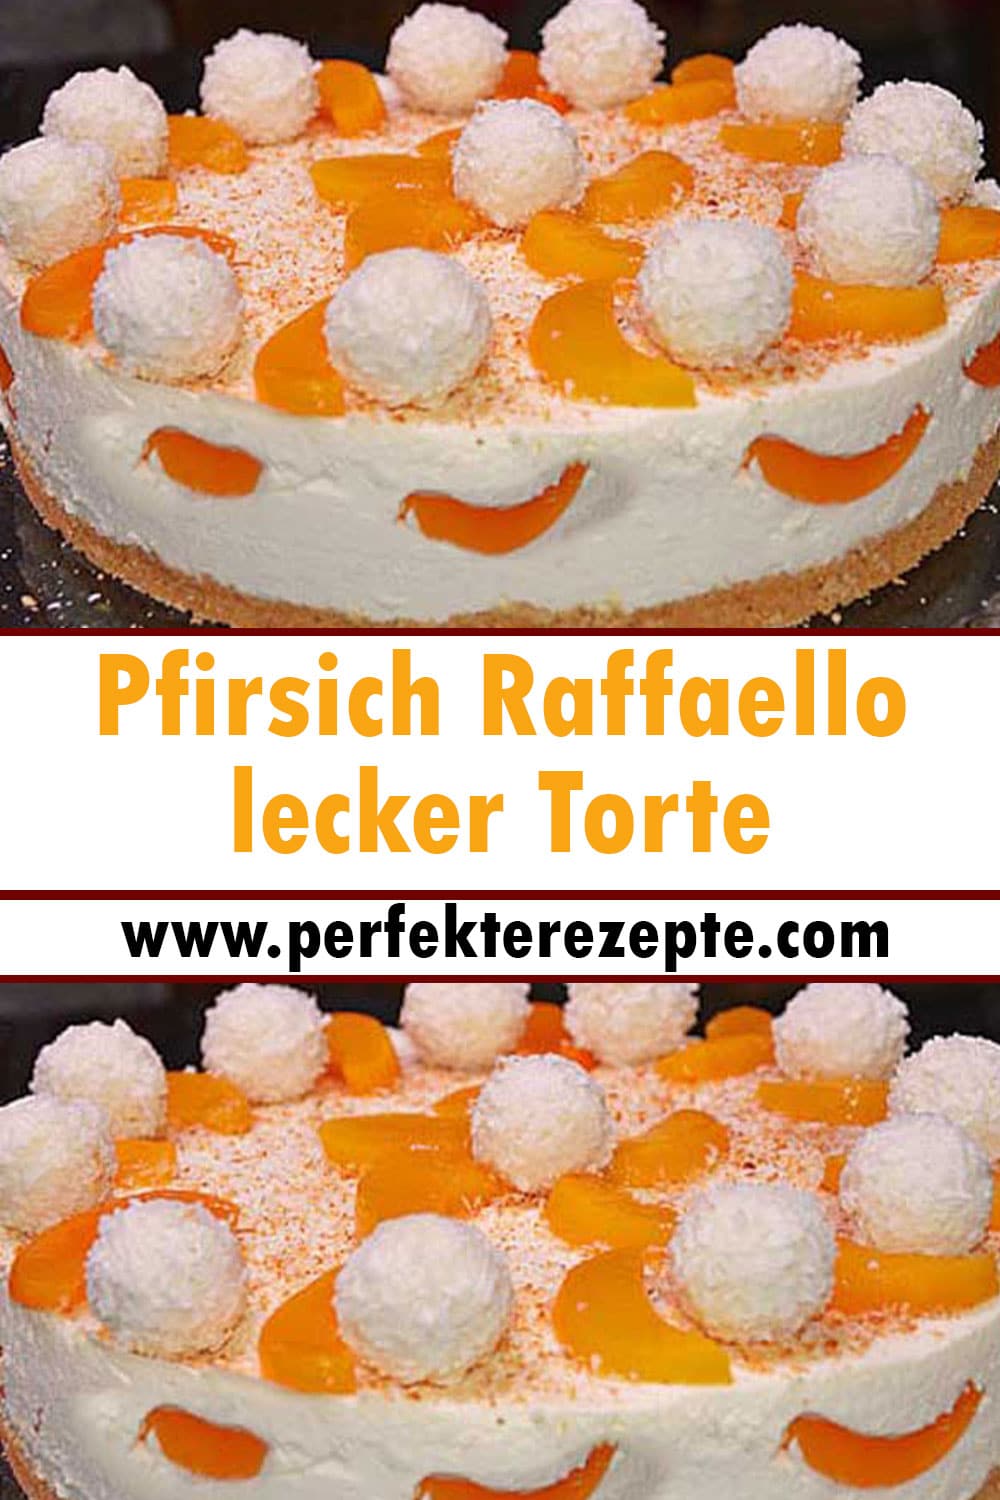 Pfirsich Raffaello lecker Torte Rezept